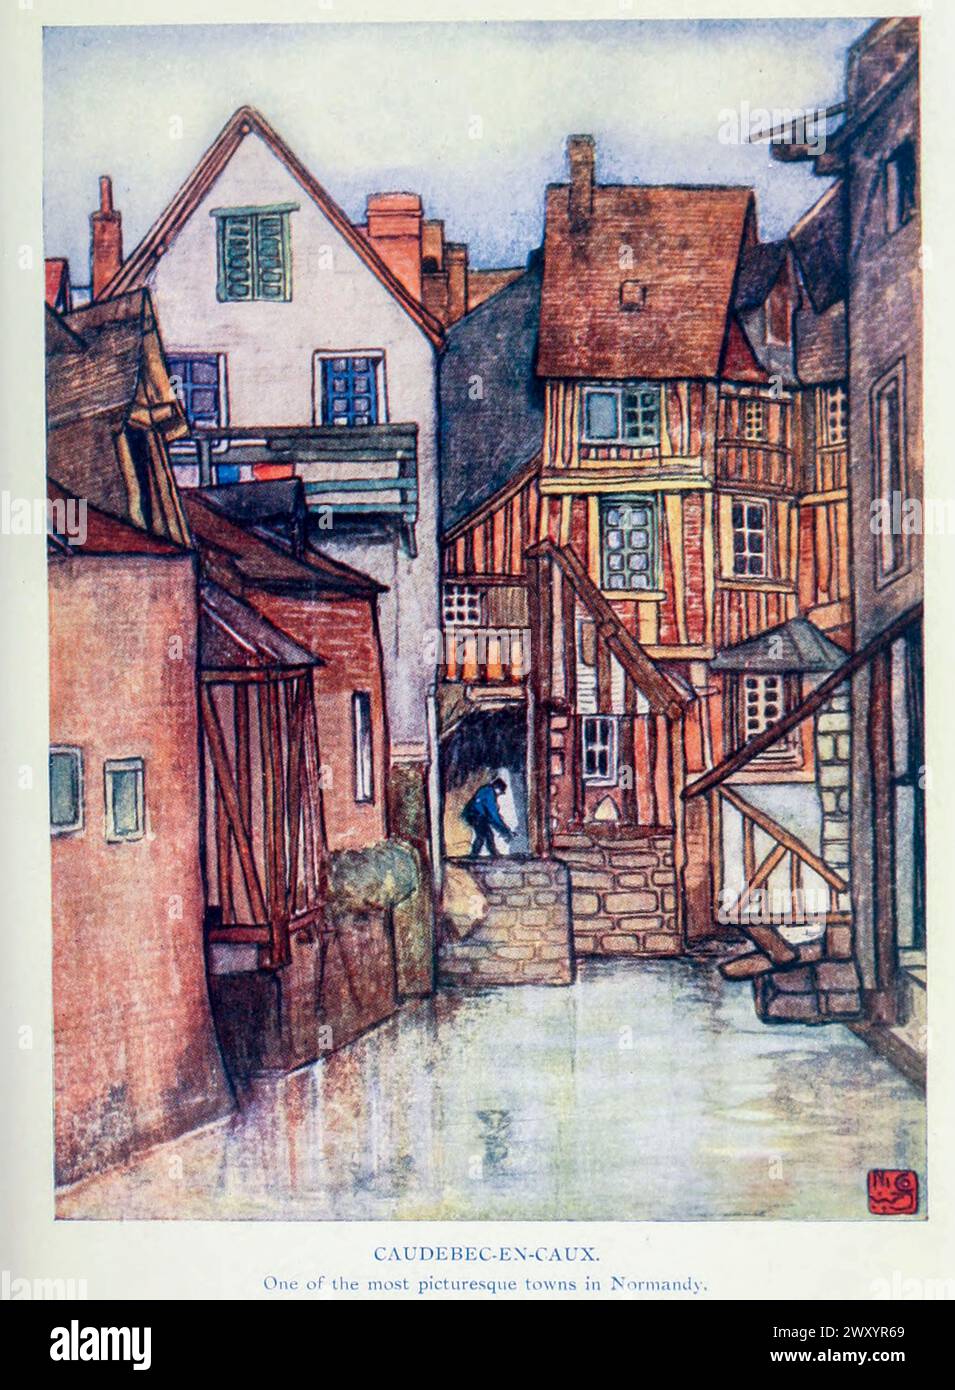 Caudebec-en-Caux, Normandie 1910 von Gordon Cochrane Home (* 25. Juli 1878 bis 13. Dezember 1969) war ein englischer Landschaftskünstler, Schriftsteller und Illustrator. Stockfoto